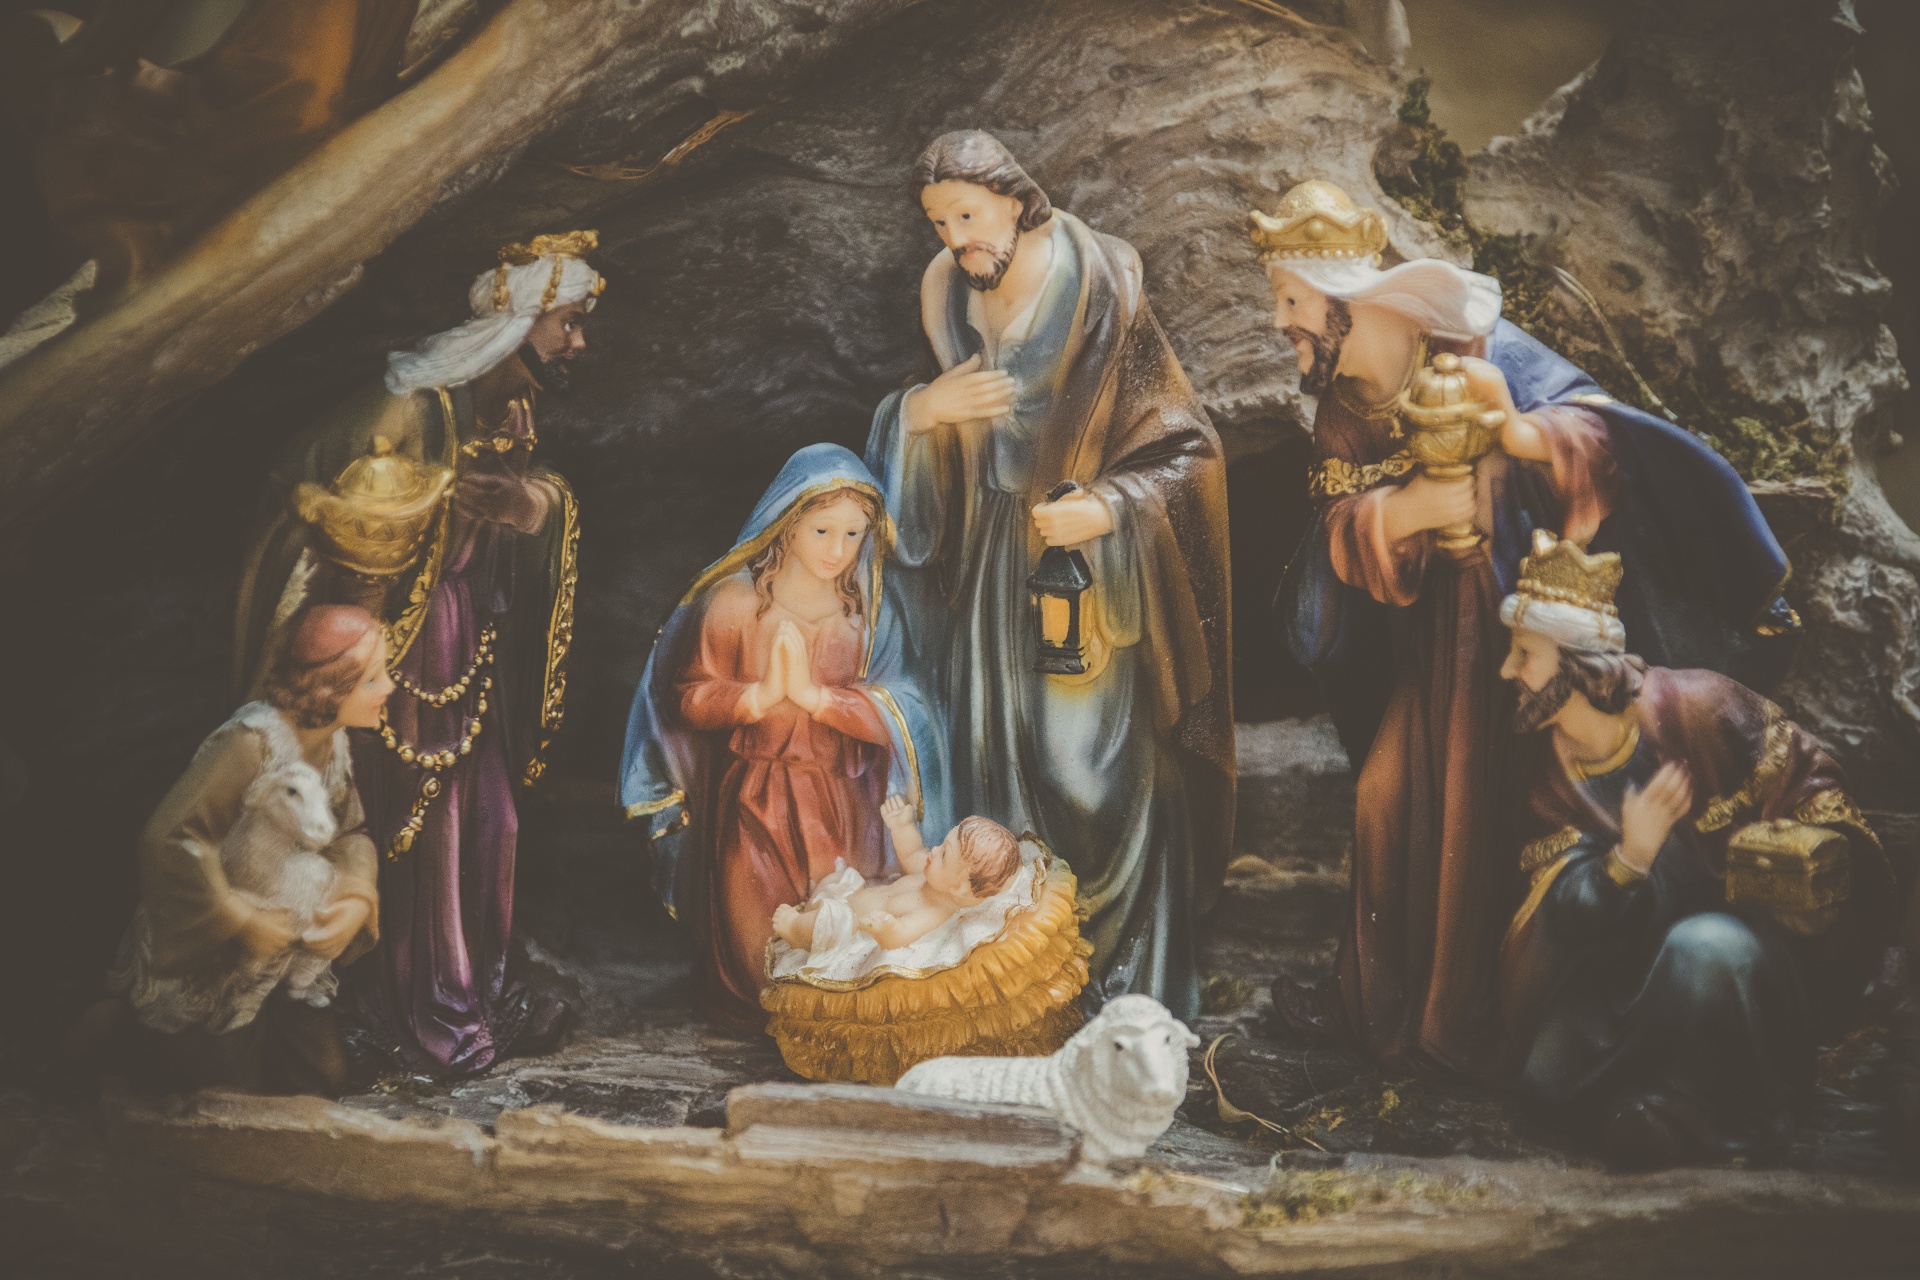 Handmade Nativity scene